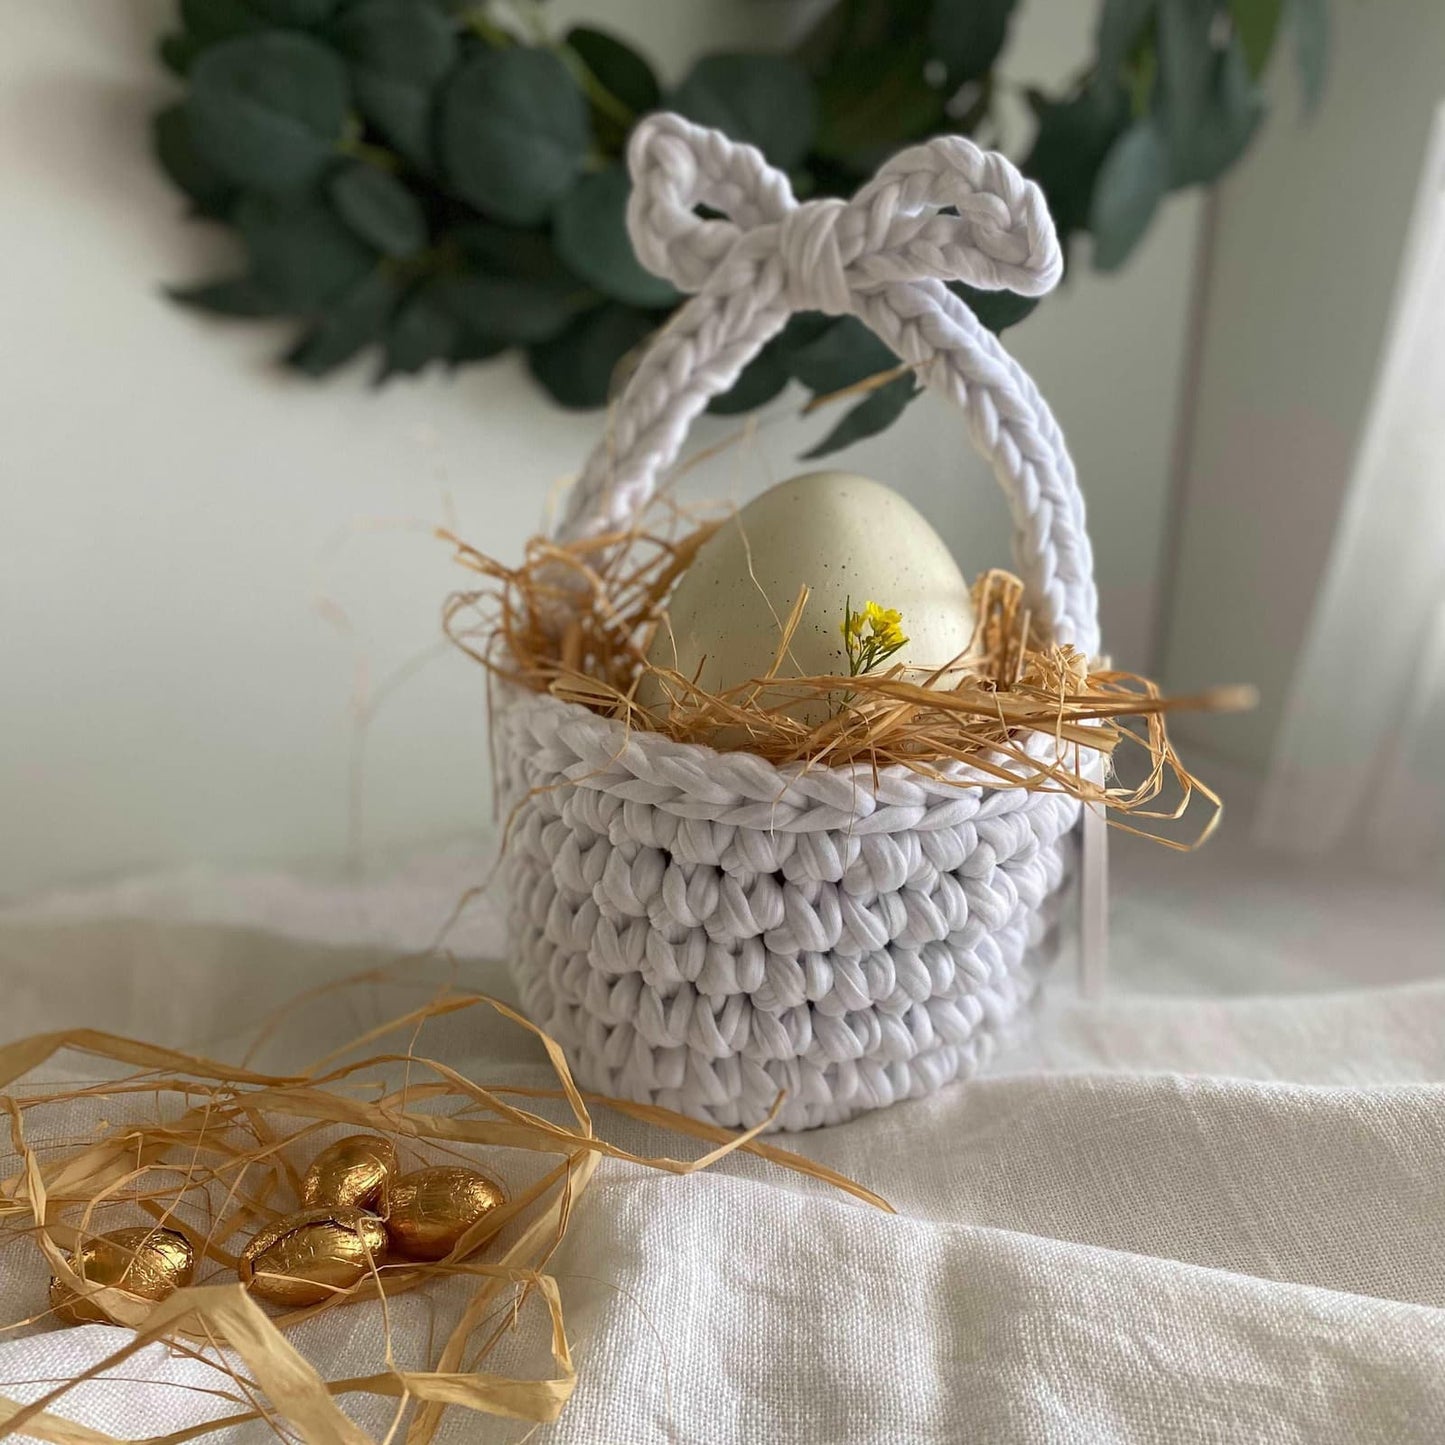 Crochet Easter Basket - Eggs Basket for Easter - Looping Home